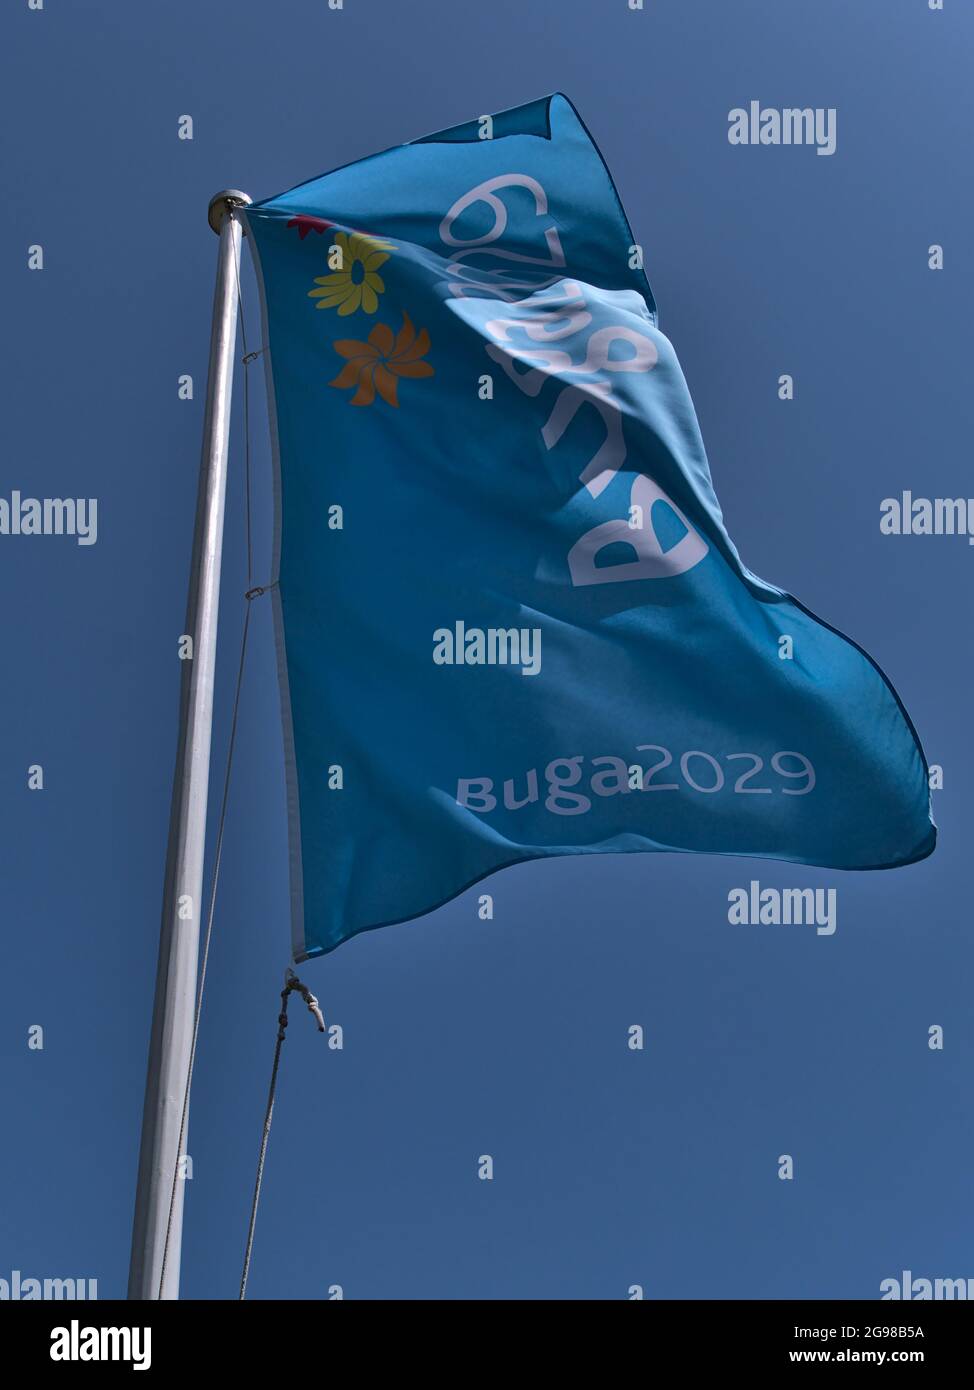 Vue à angle bas du mât avec drapeau bleu clair pour Bundesgartenschau (Buga) 2029, un spectacle horticole biennal. Banque D'Images